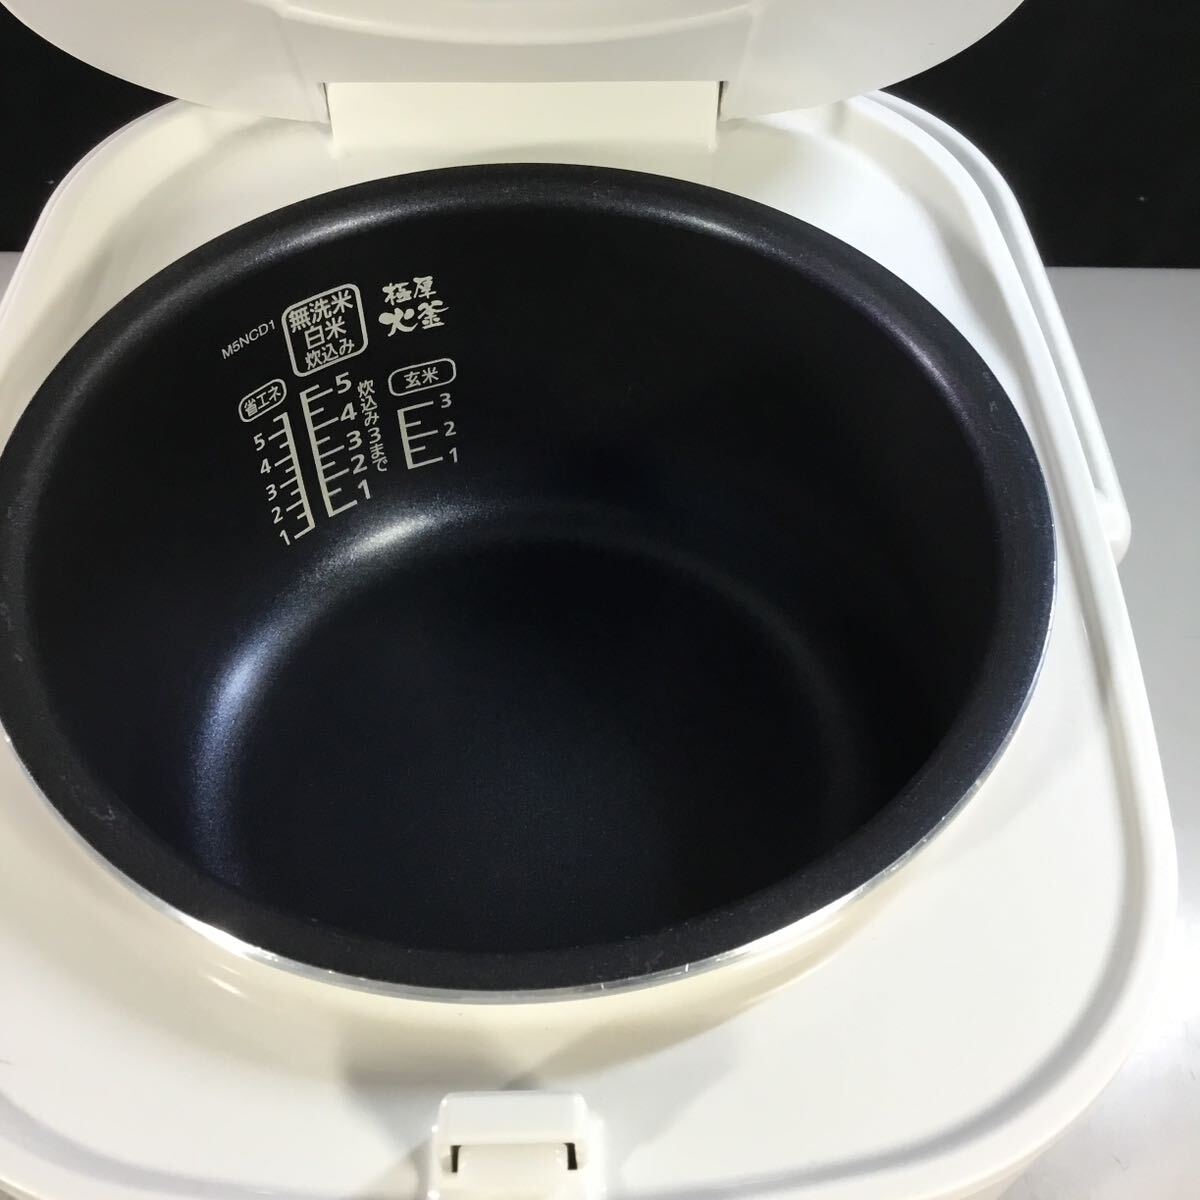 【送料無料】(051769G) アイリスオーヤマ DKERC-MA50-S 2020年製 炊飯ジャー 5.5合炊き 中古品 絶品ごはん _画像3